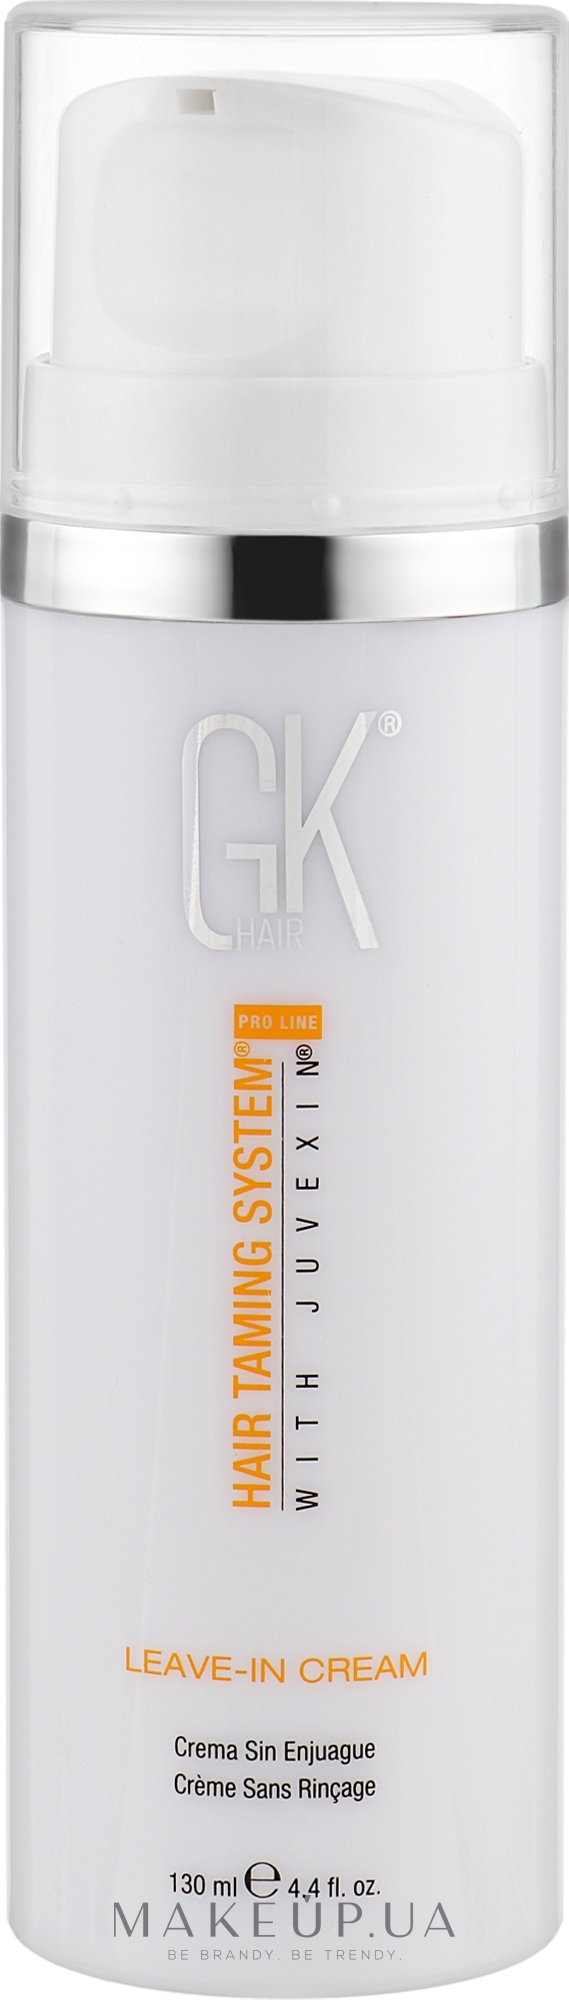 Крем для волос - GKhair Leave-in Cream — фото 130ml